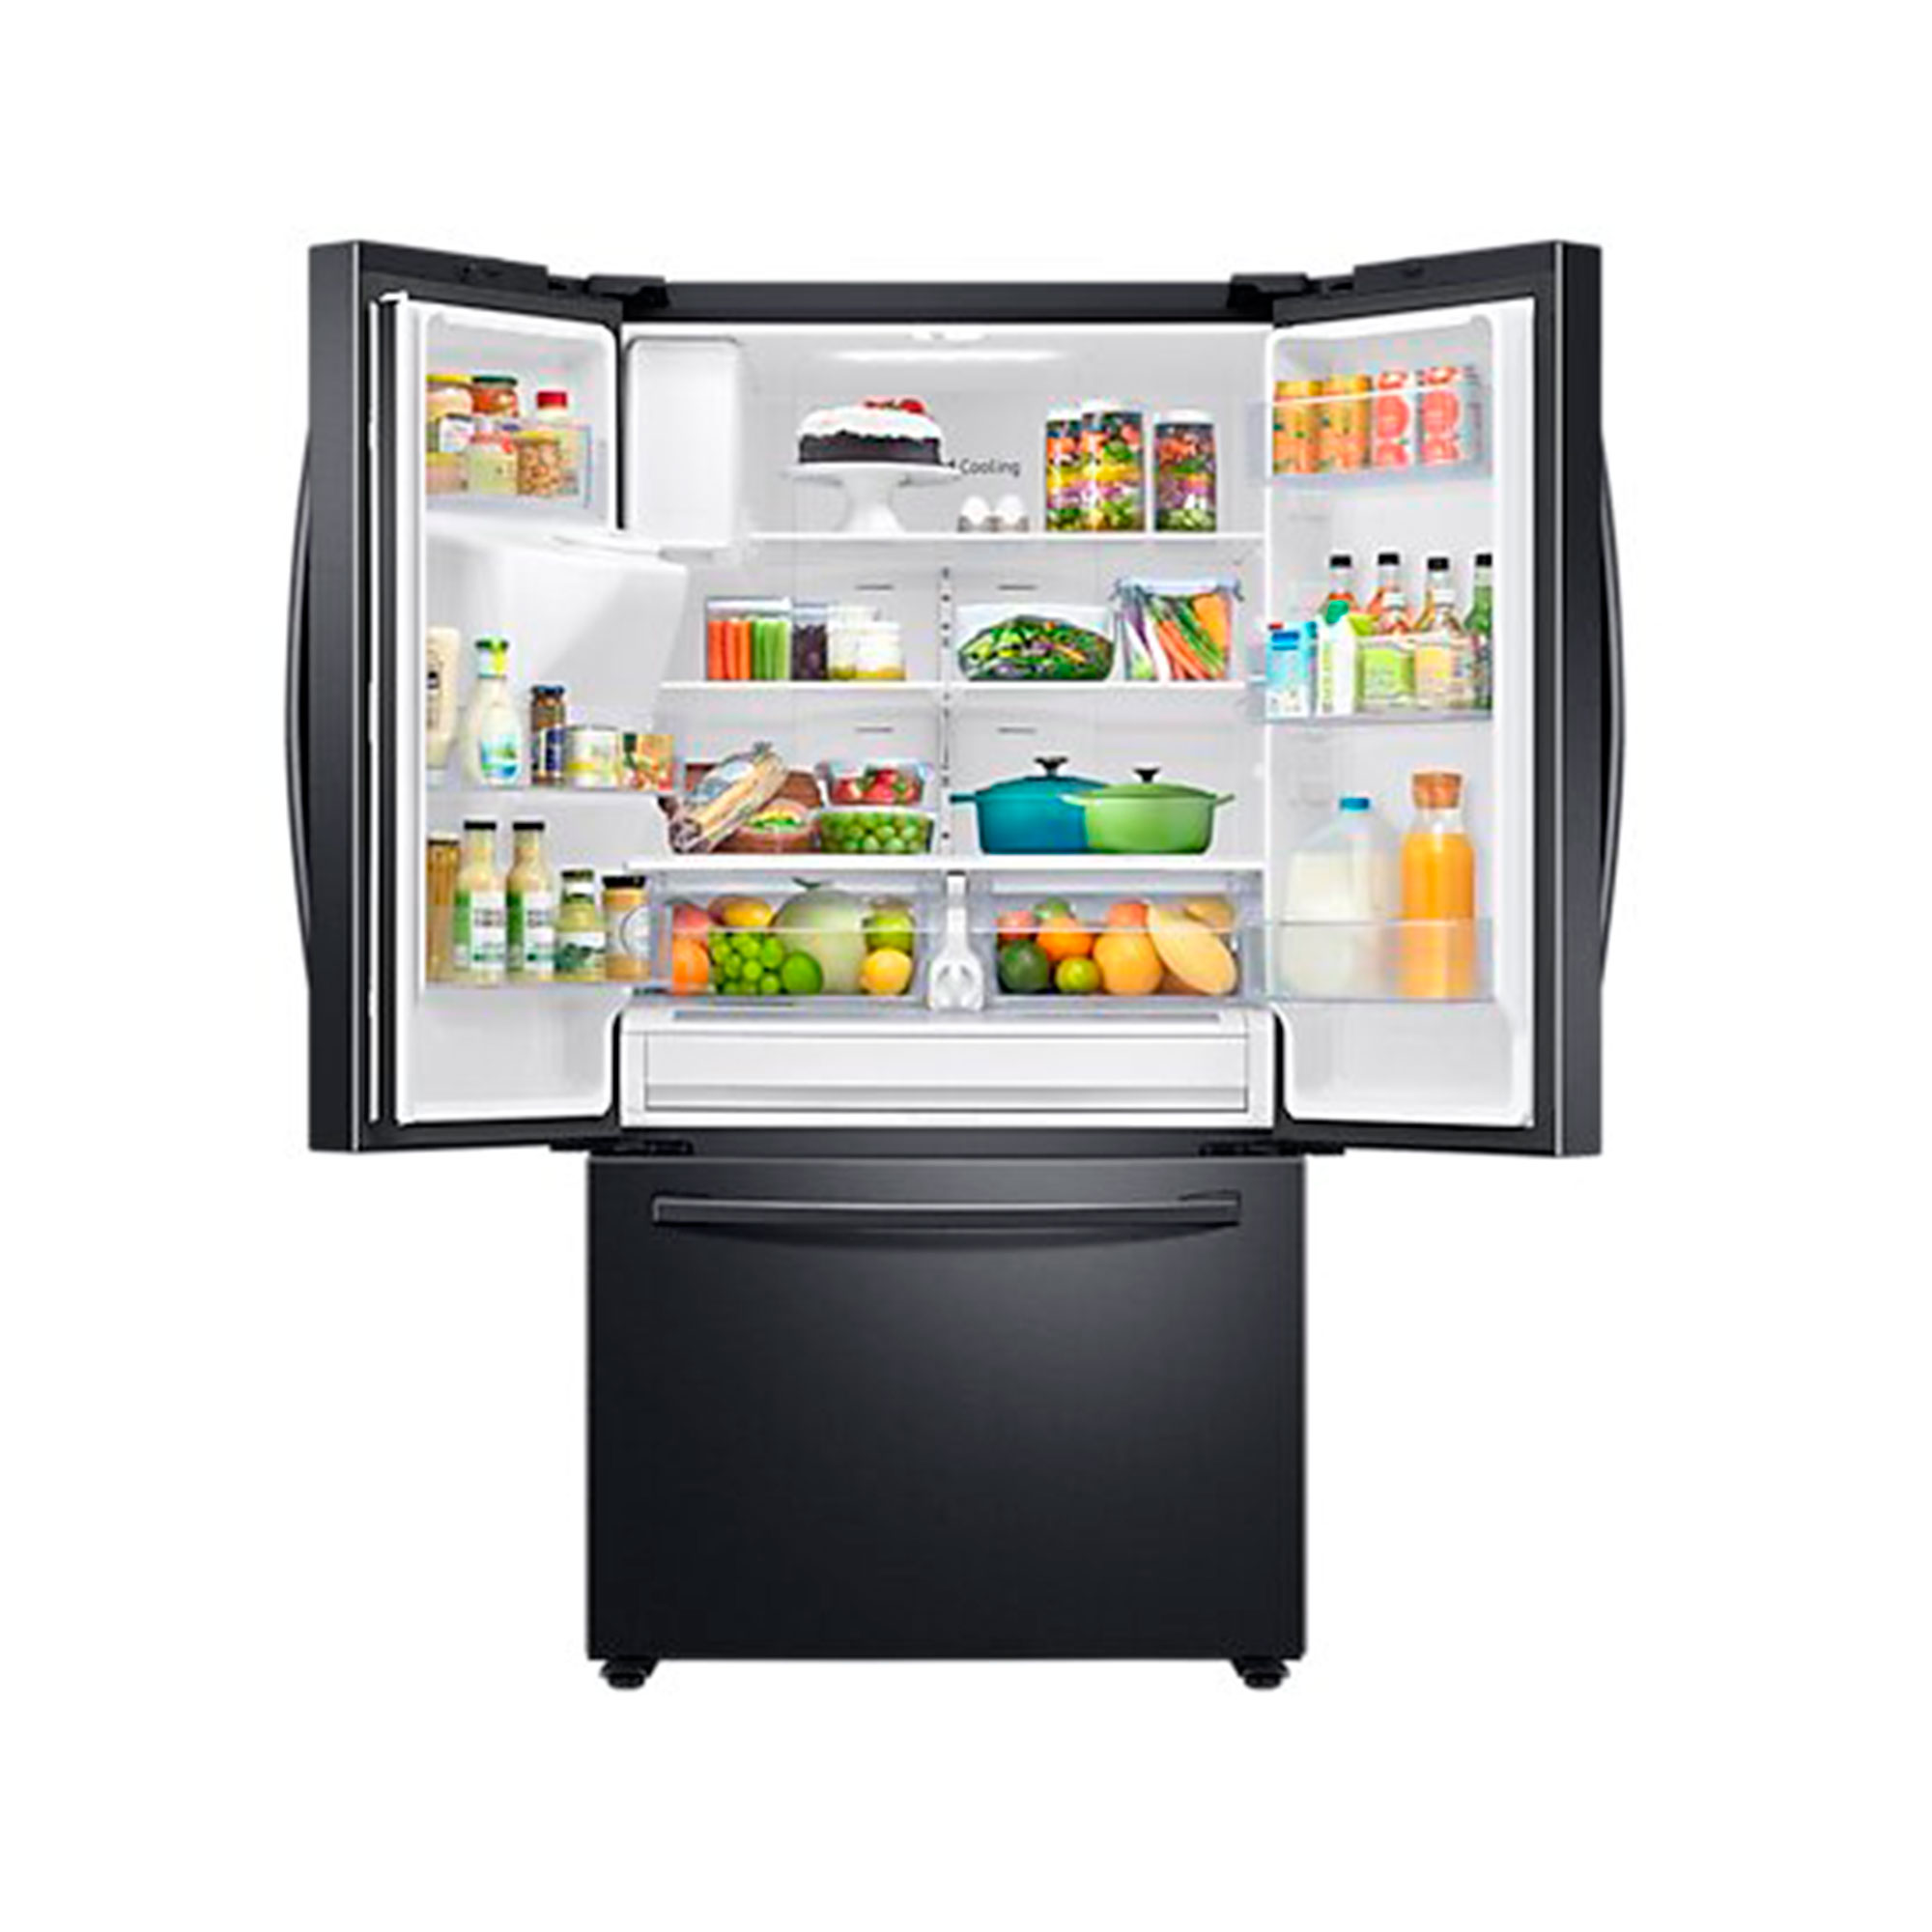 Refrigerador Samsung 28 pies - Multimax Store